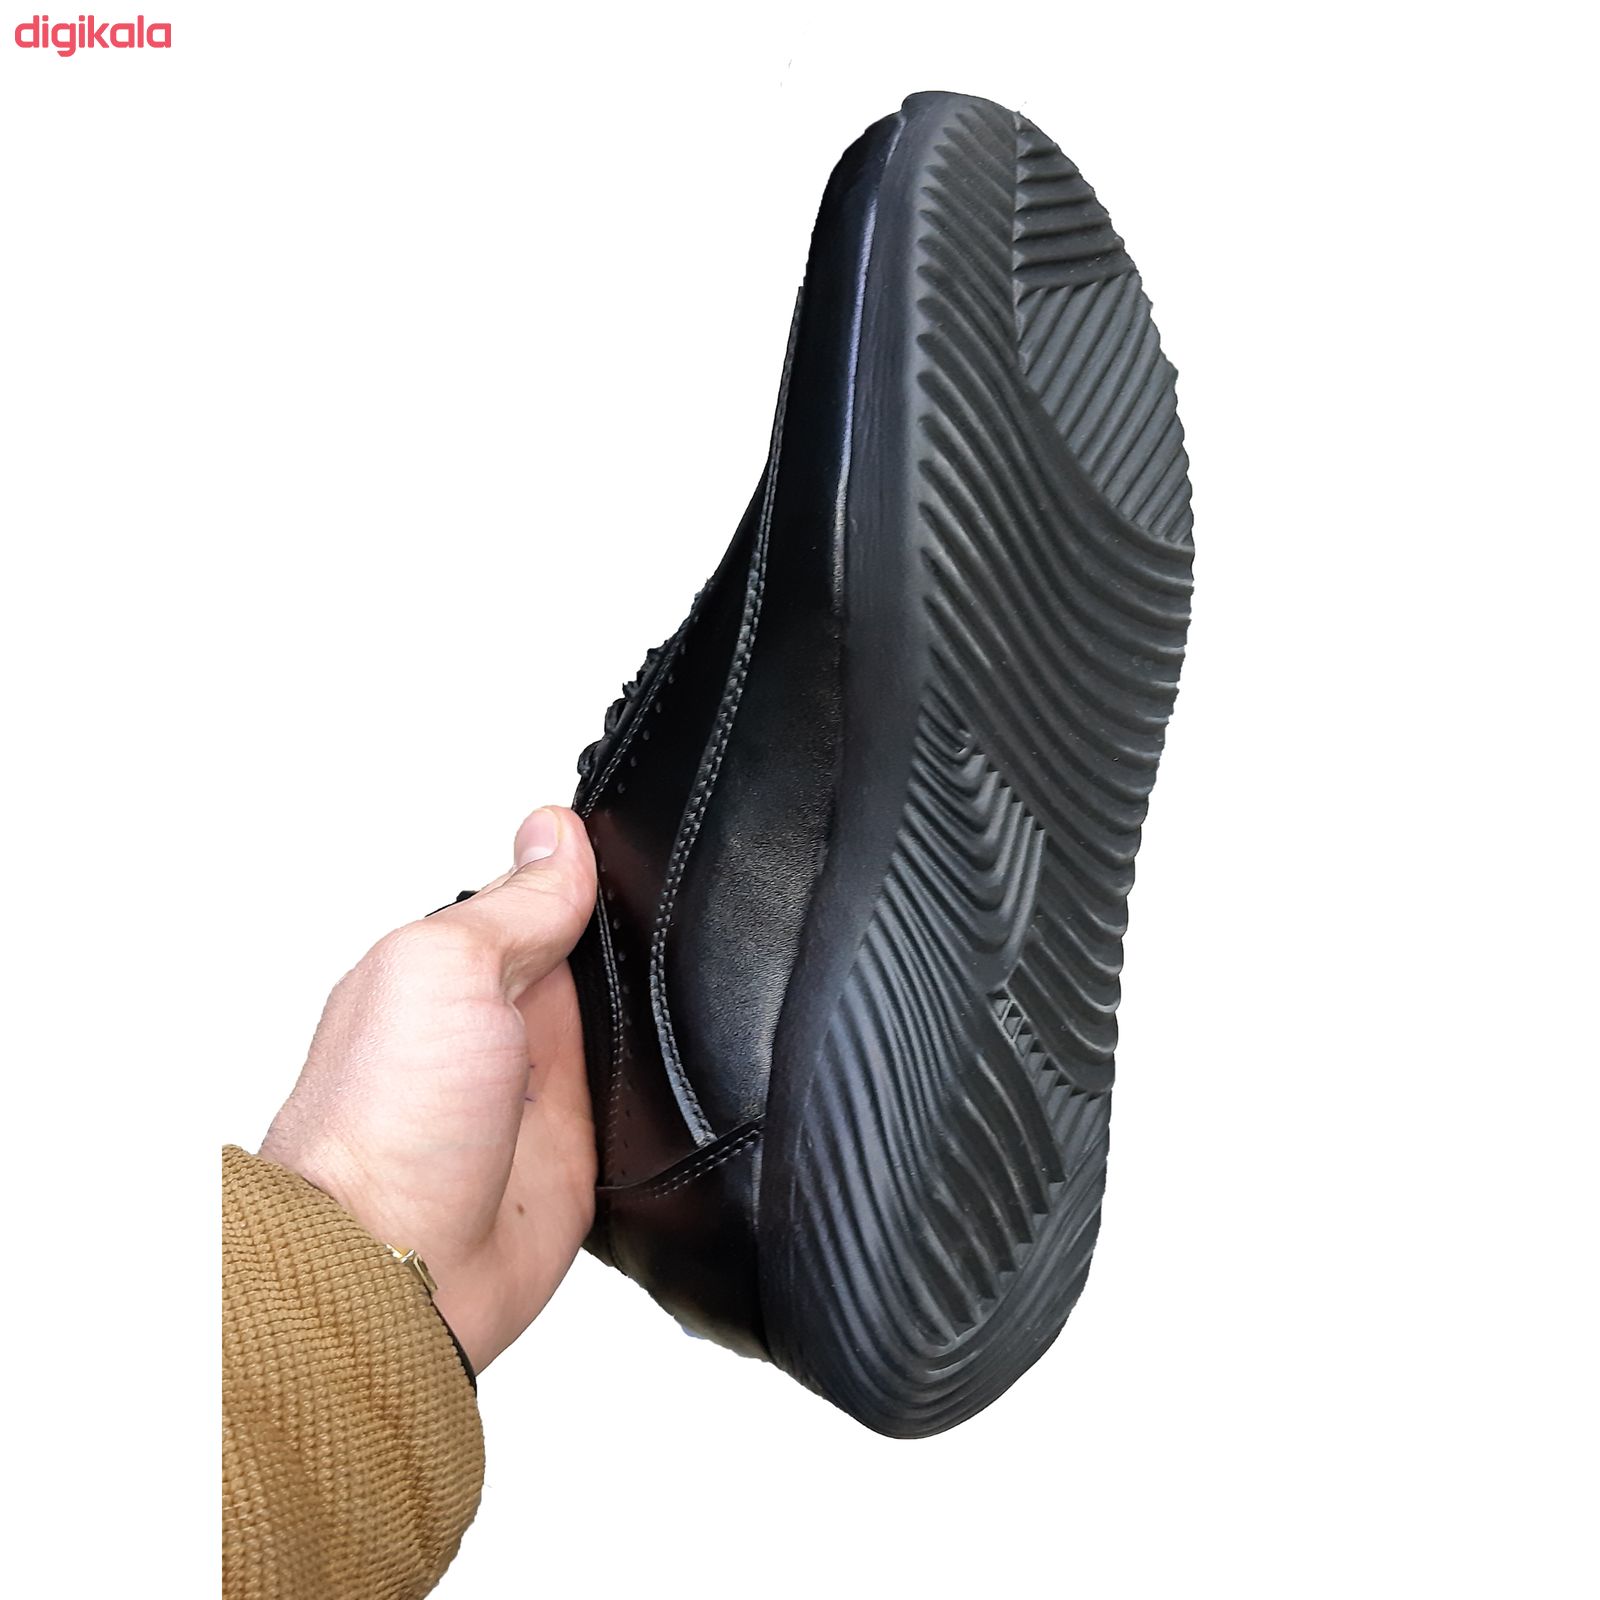  خرید اینترنتی با تخفیف ویژه  کفش طبی مردانه مدل F 6597